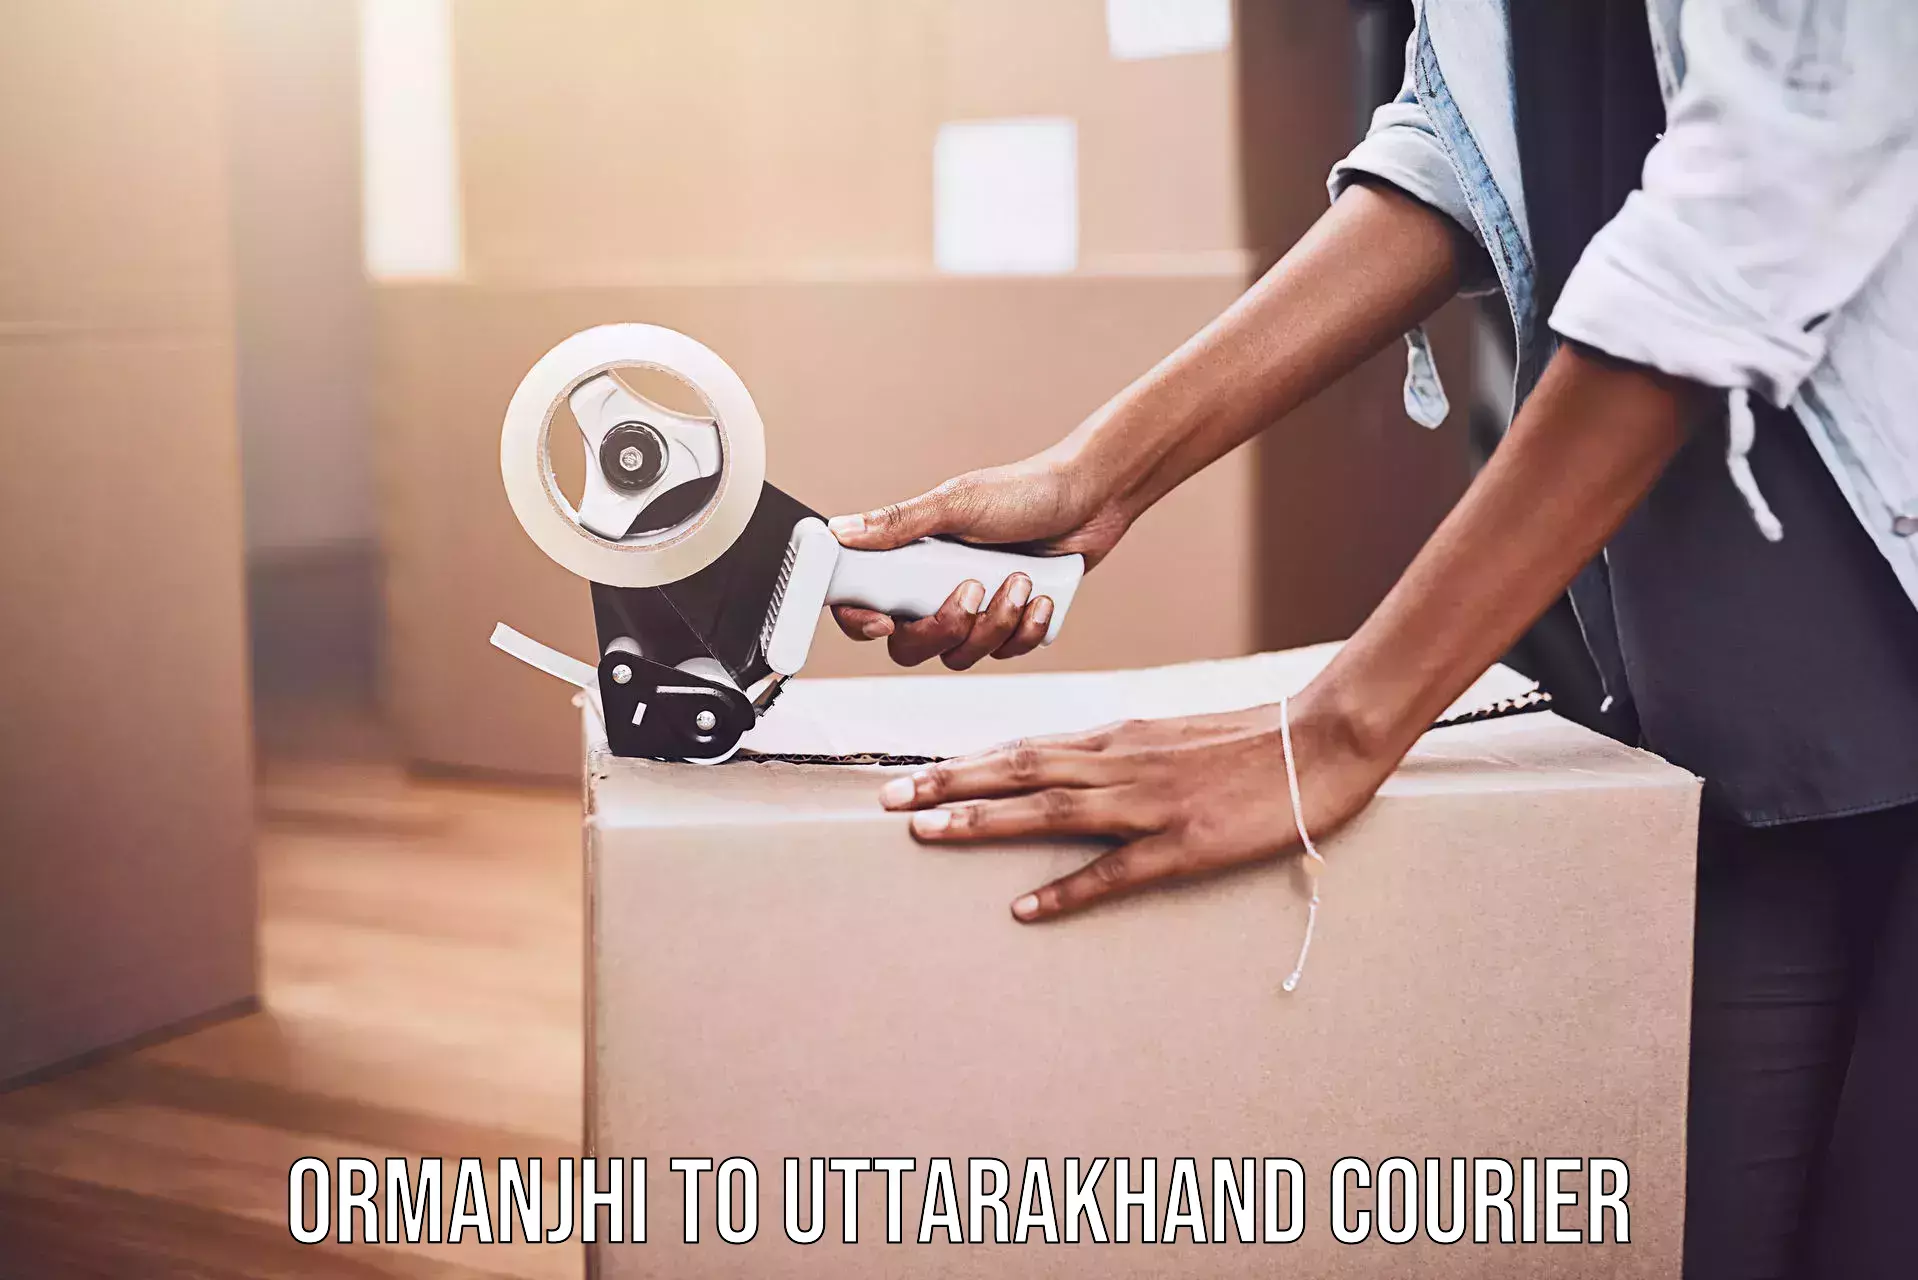 Efficient order fulfillment in Ormanjhi to Uttarakhand